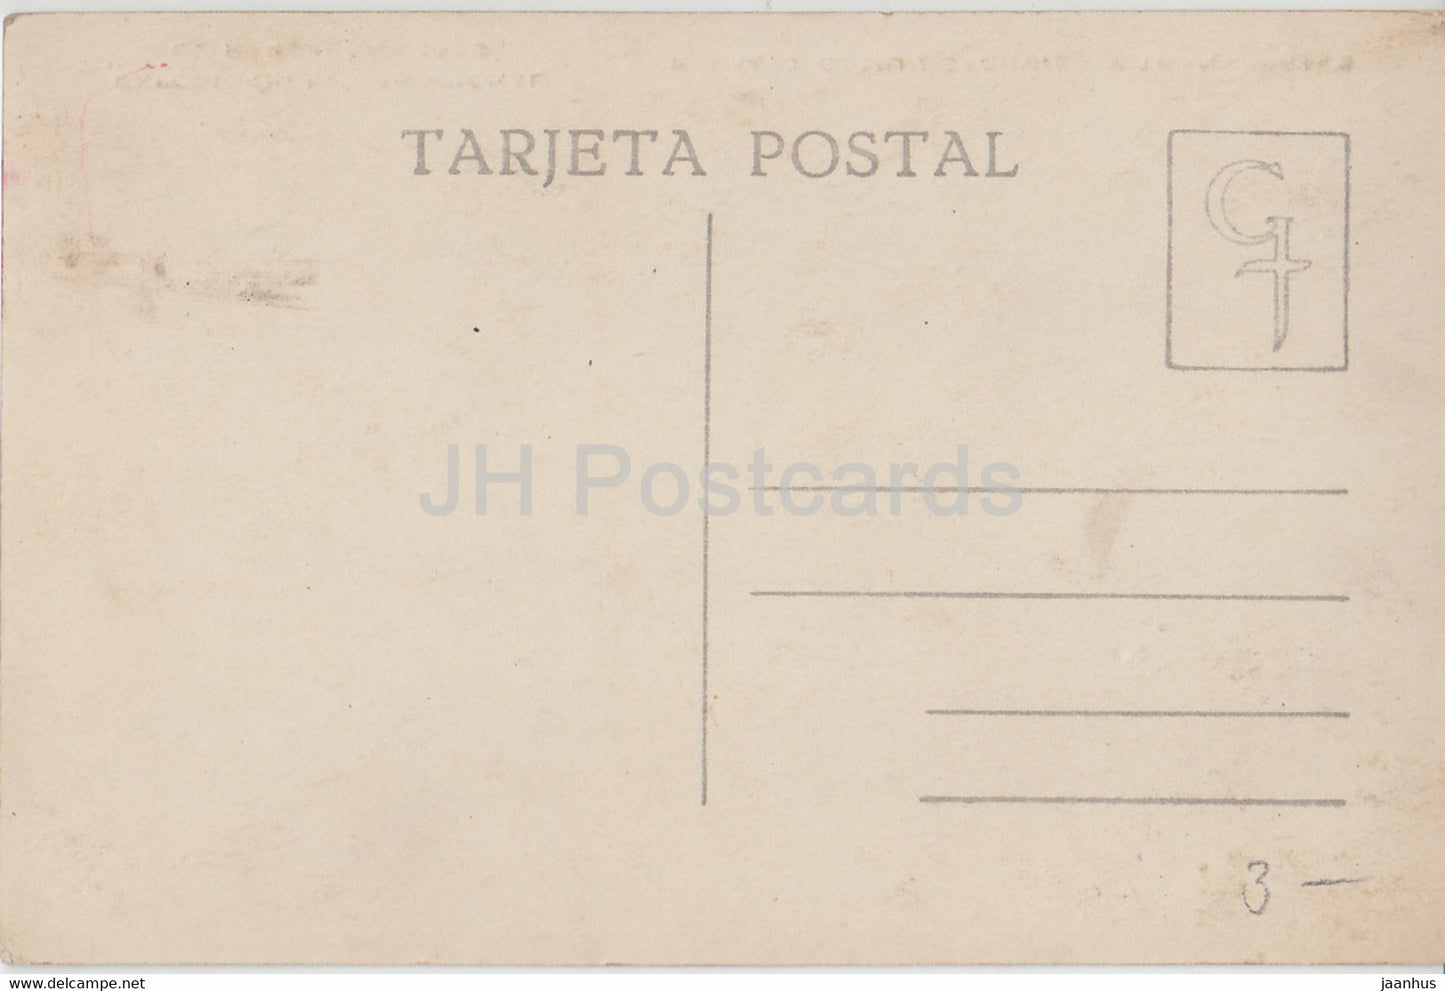 Exposicion Internacional de Barcelona 1929 - Palacio Comunicaciones y Transportes - car - old postcard - Spain - unused